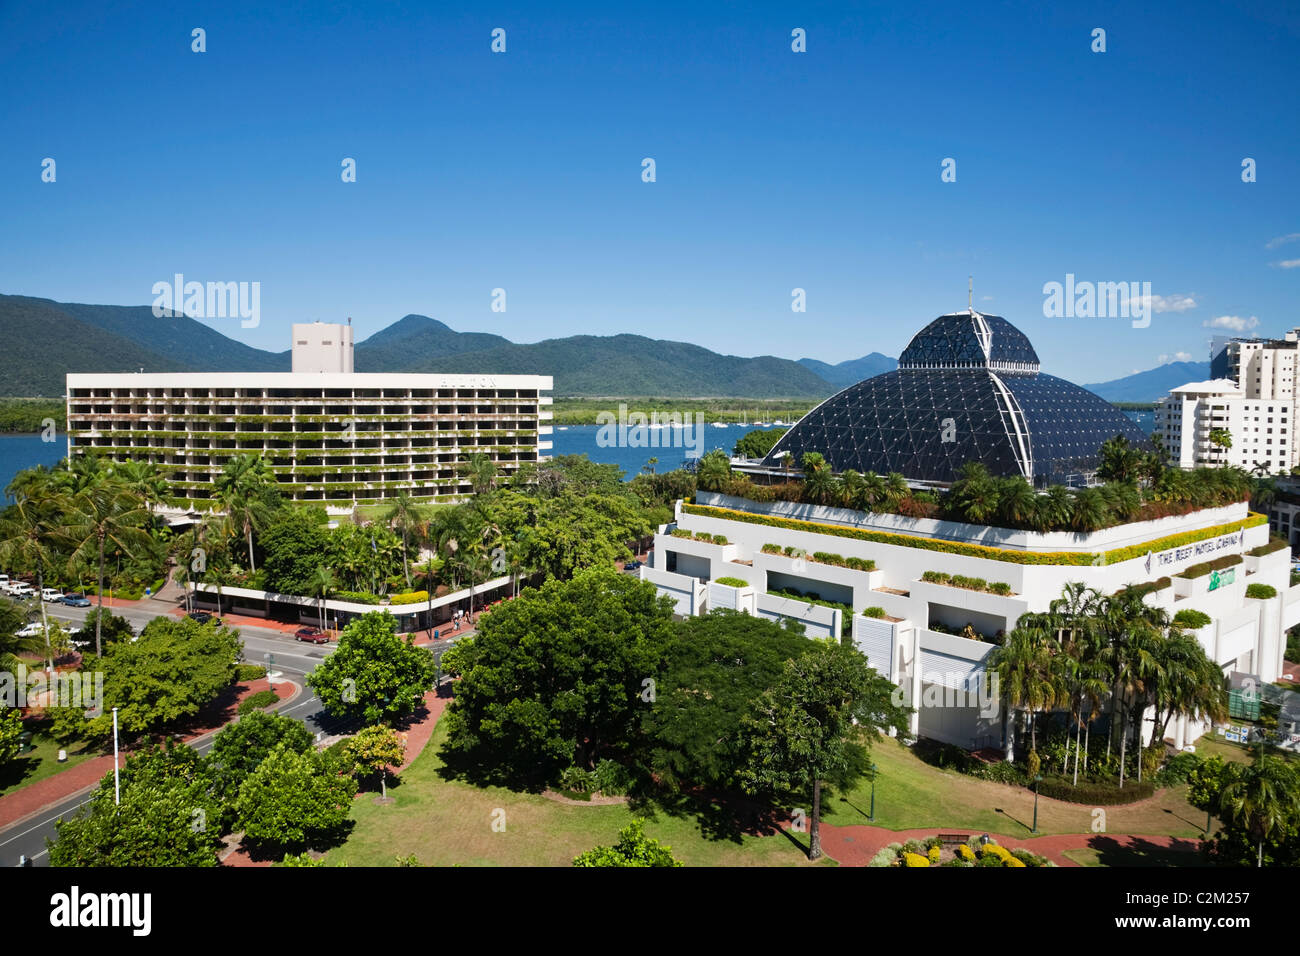 Das Hilton Hotel und Reef Hotel Casino. Cairns, Queensland, Australien Stockfoto